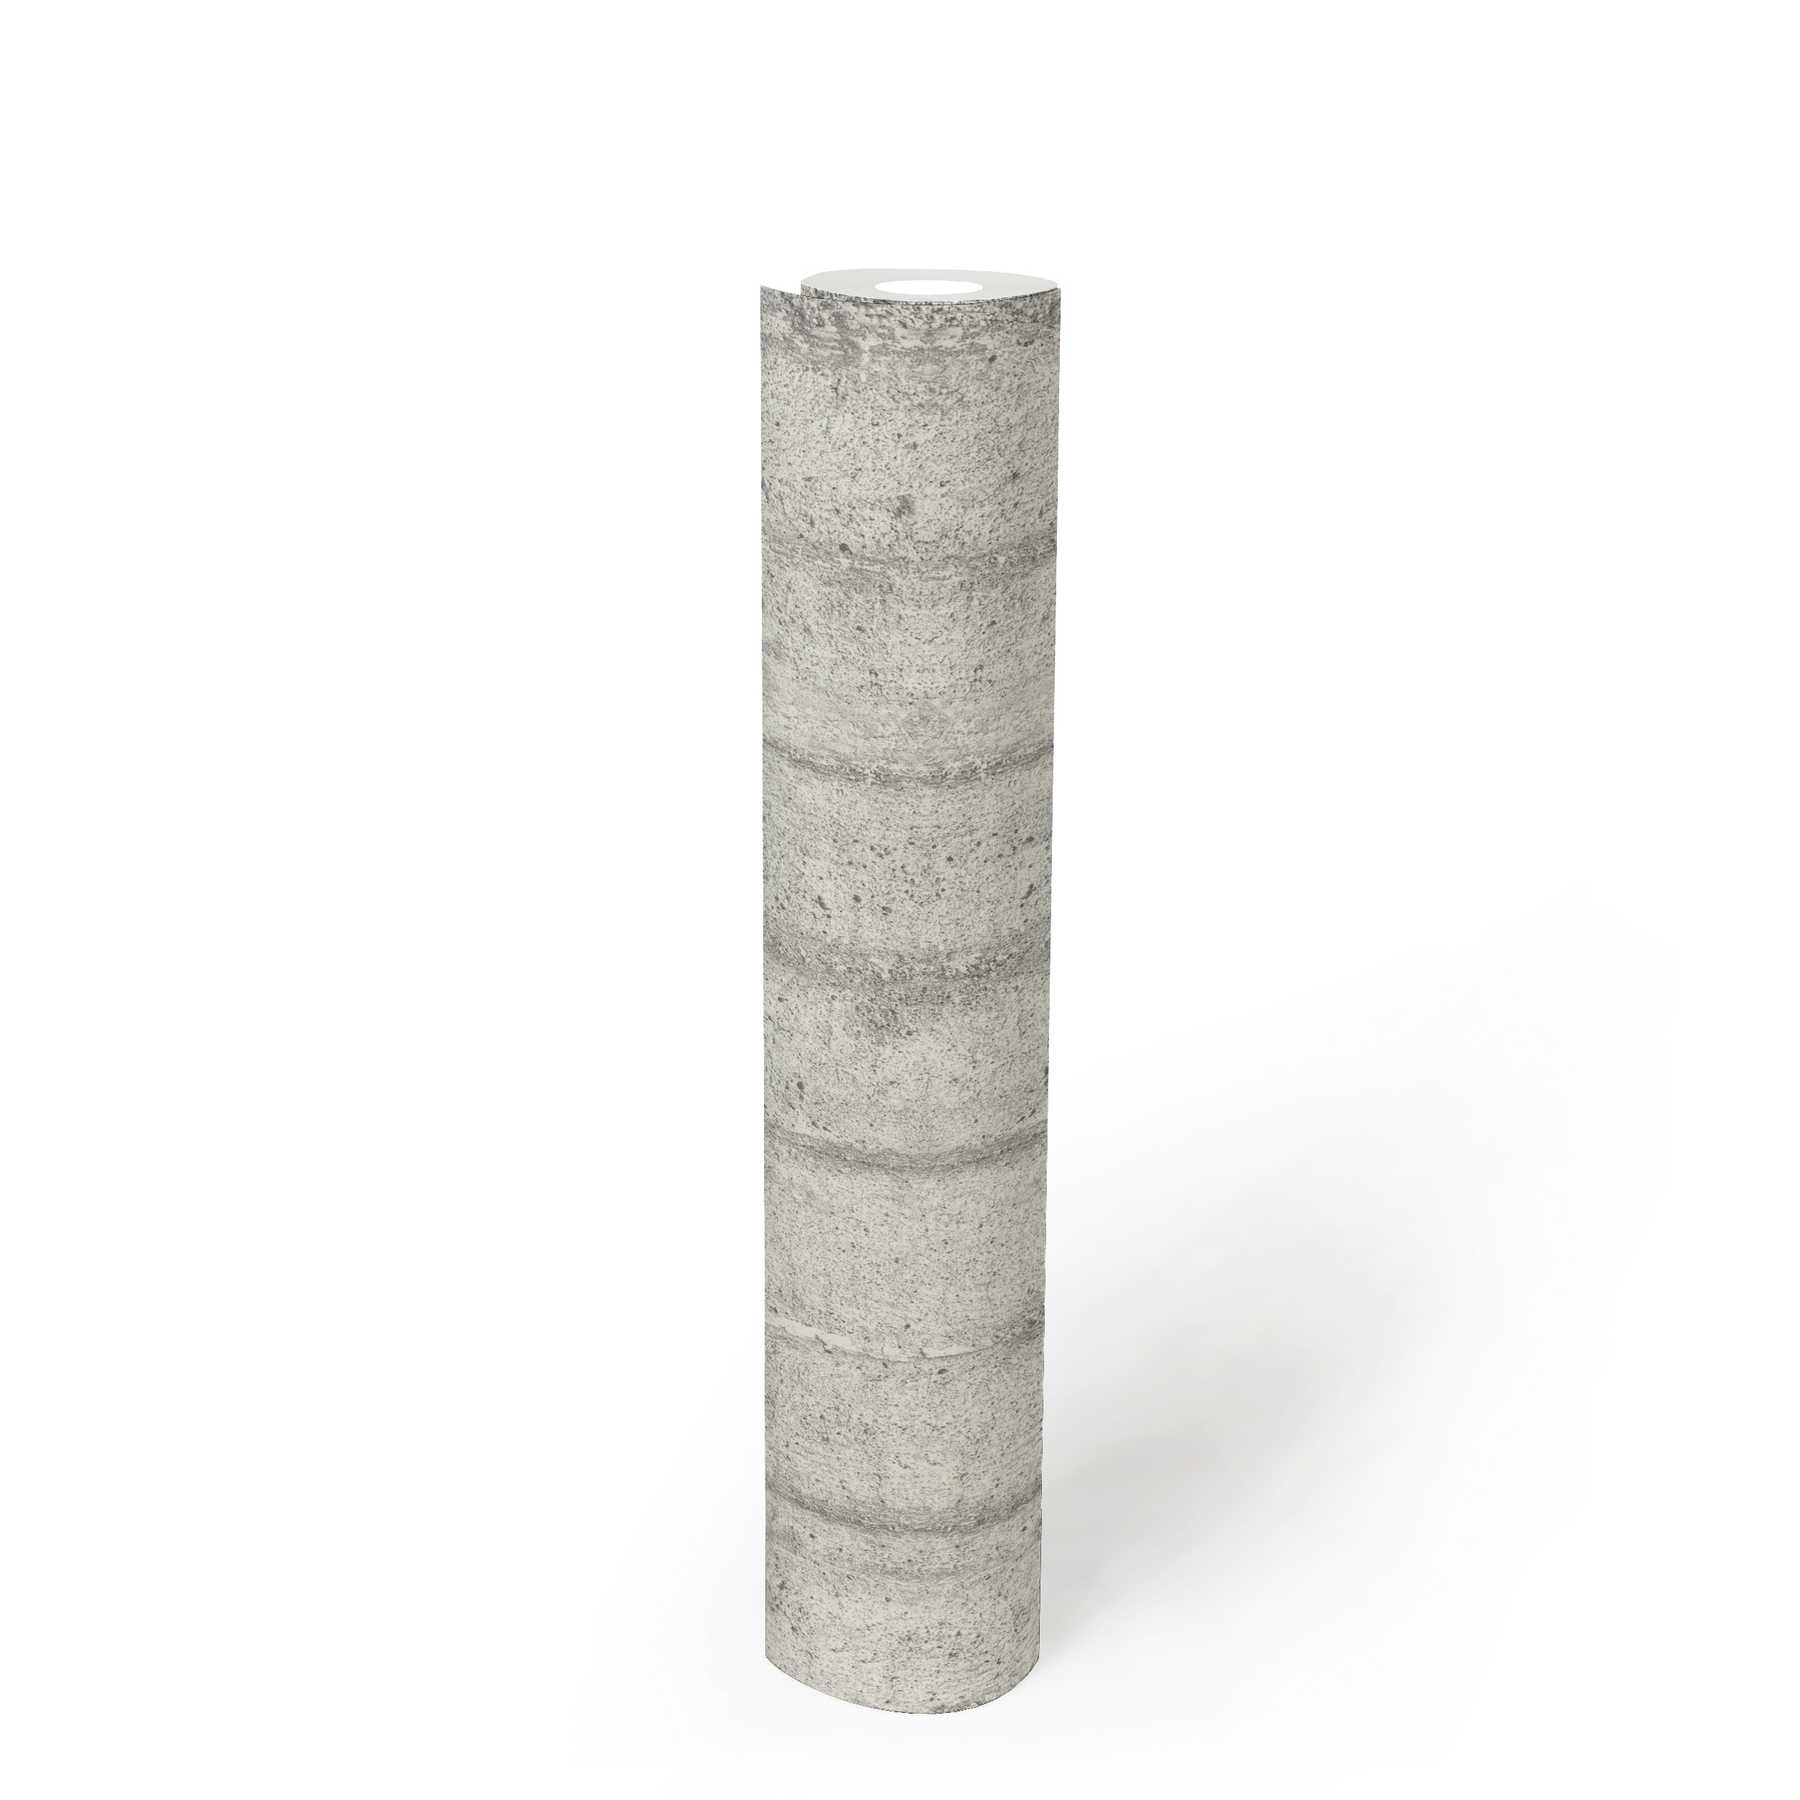             Carta da parati effetto cemento, cemento grezzo per casseforme - grigio
        